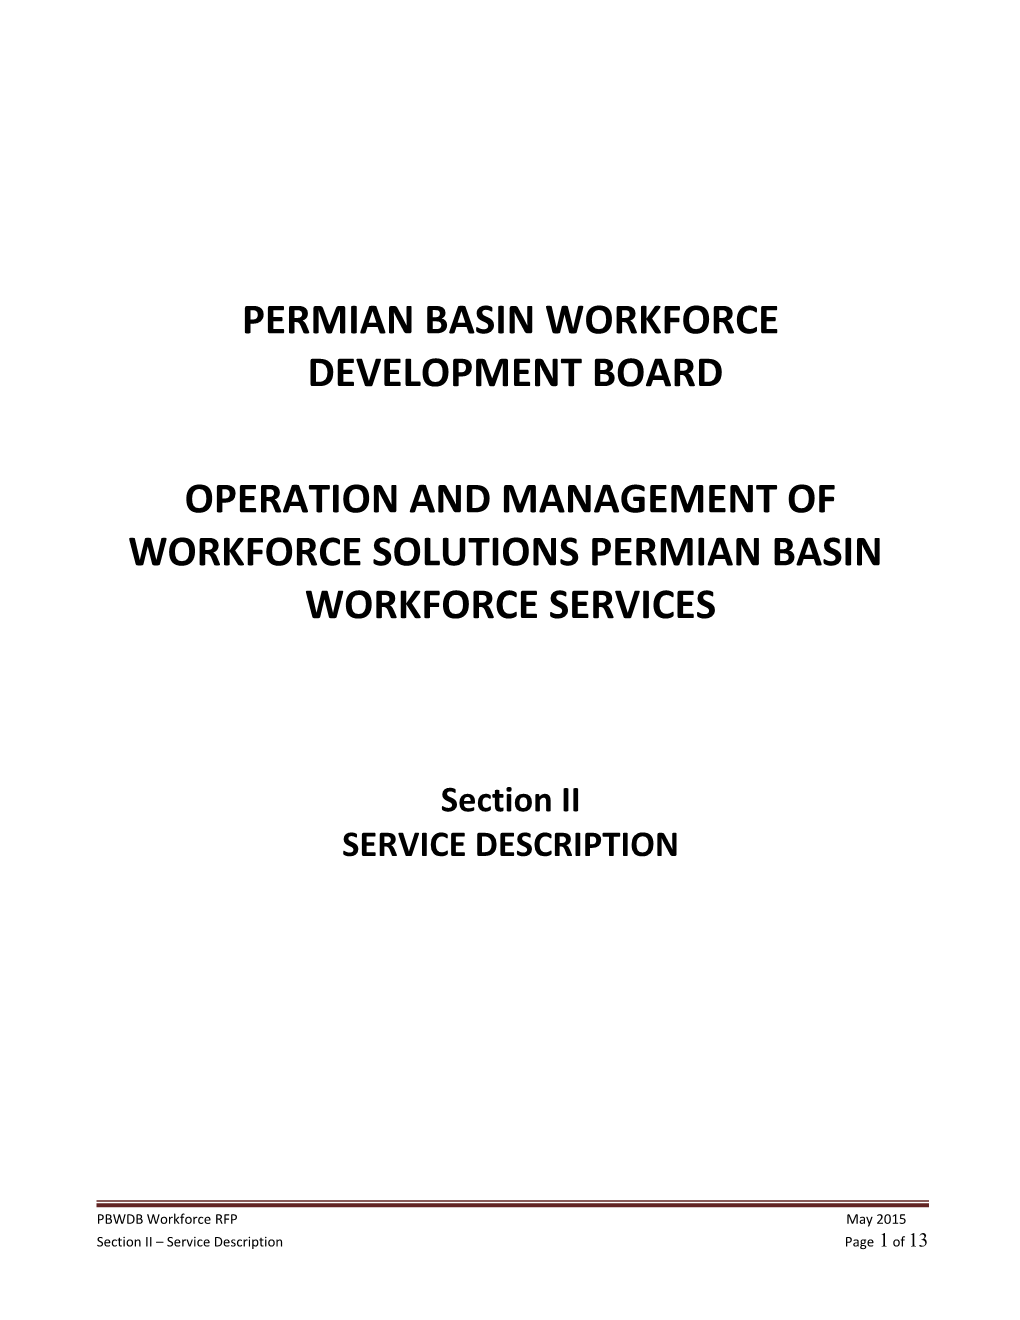 Permian Basin Workforce Development Board